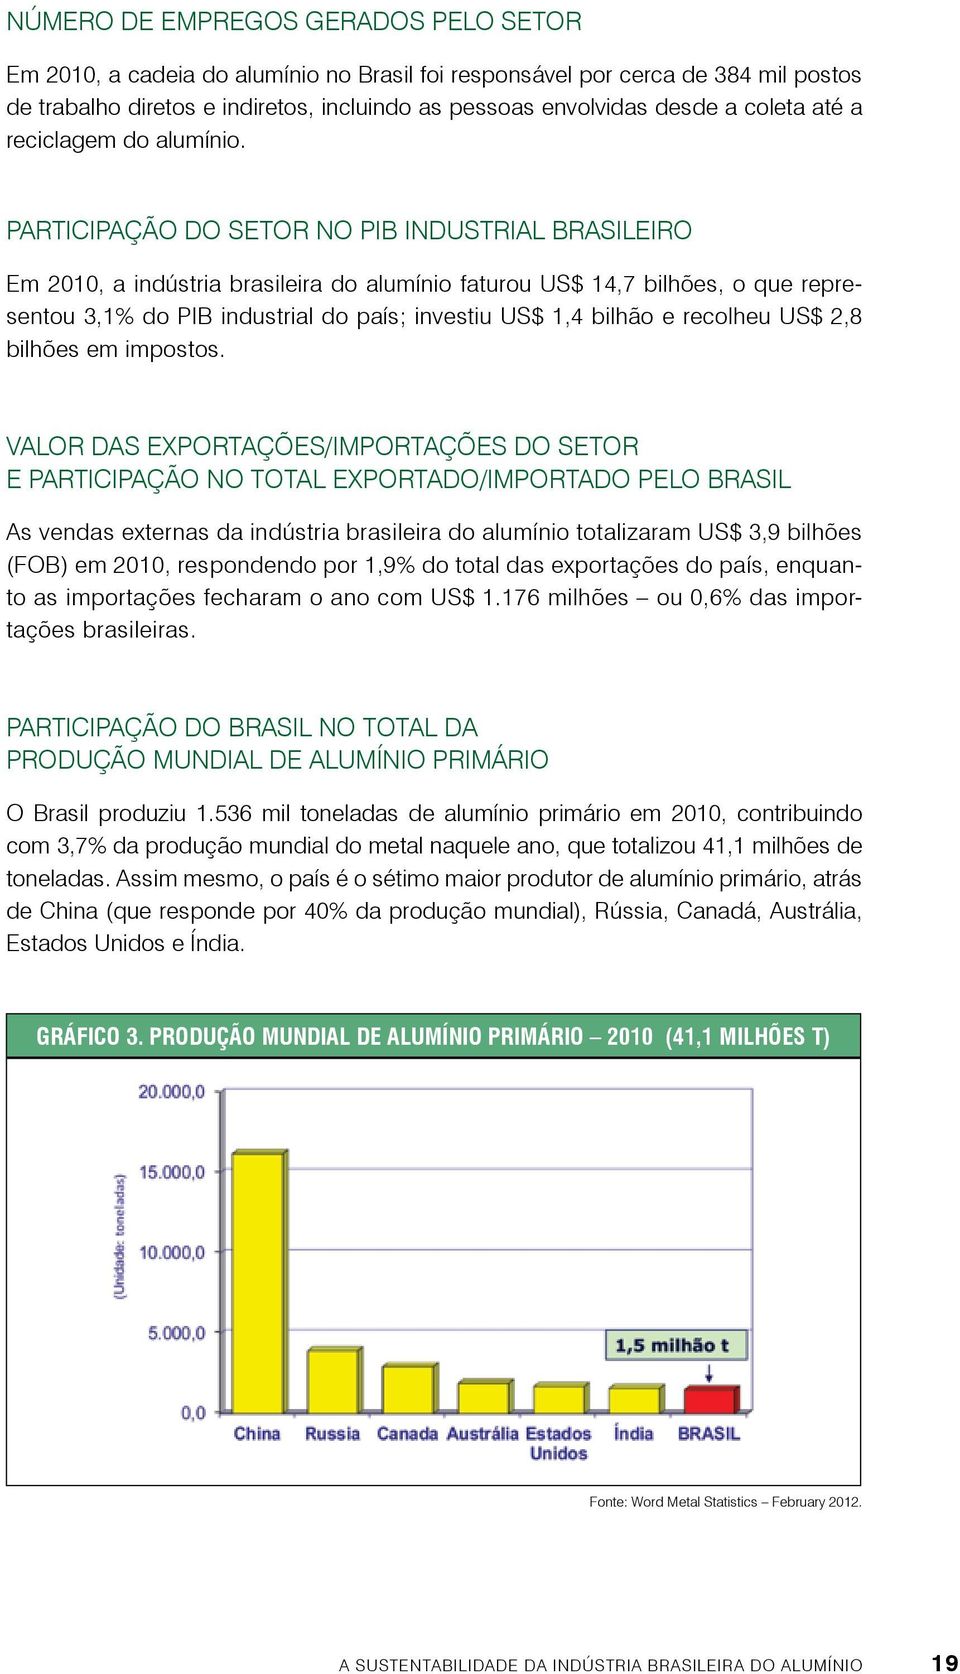 Participação do setor no PIB industrial brasileiro Em 2010, a indústria brasileira do alumínio faturou US$ 14,7 bilhões, o que representou 3,1% do PIB industrial do país; investiu US$ 1,4 bilhão e